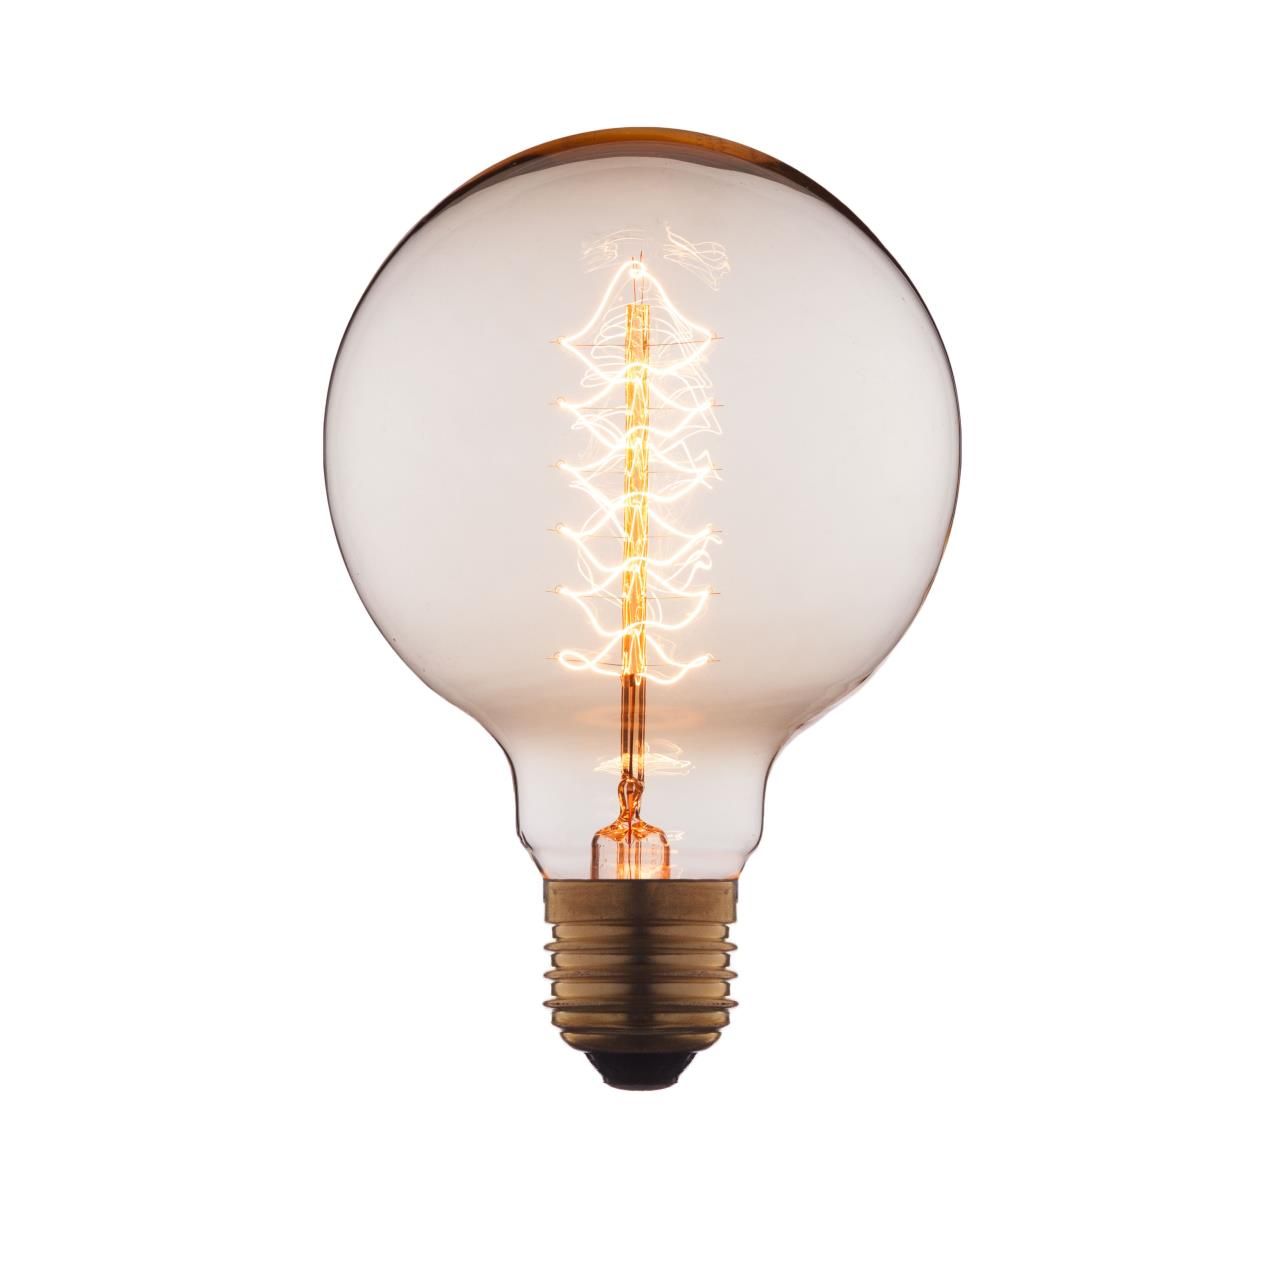 Ретро лампа Эдисона (Шар) E27 40W 220V Edison Bulb